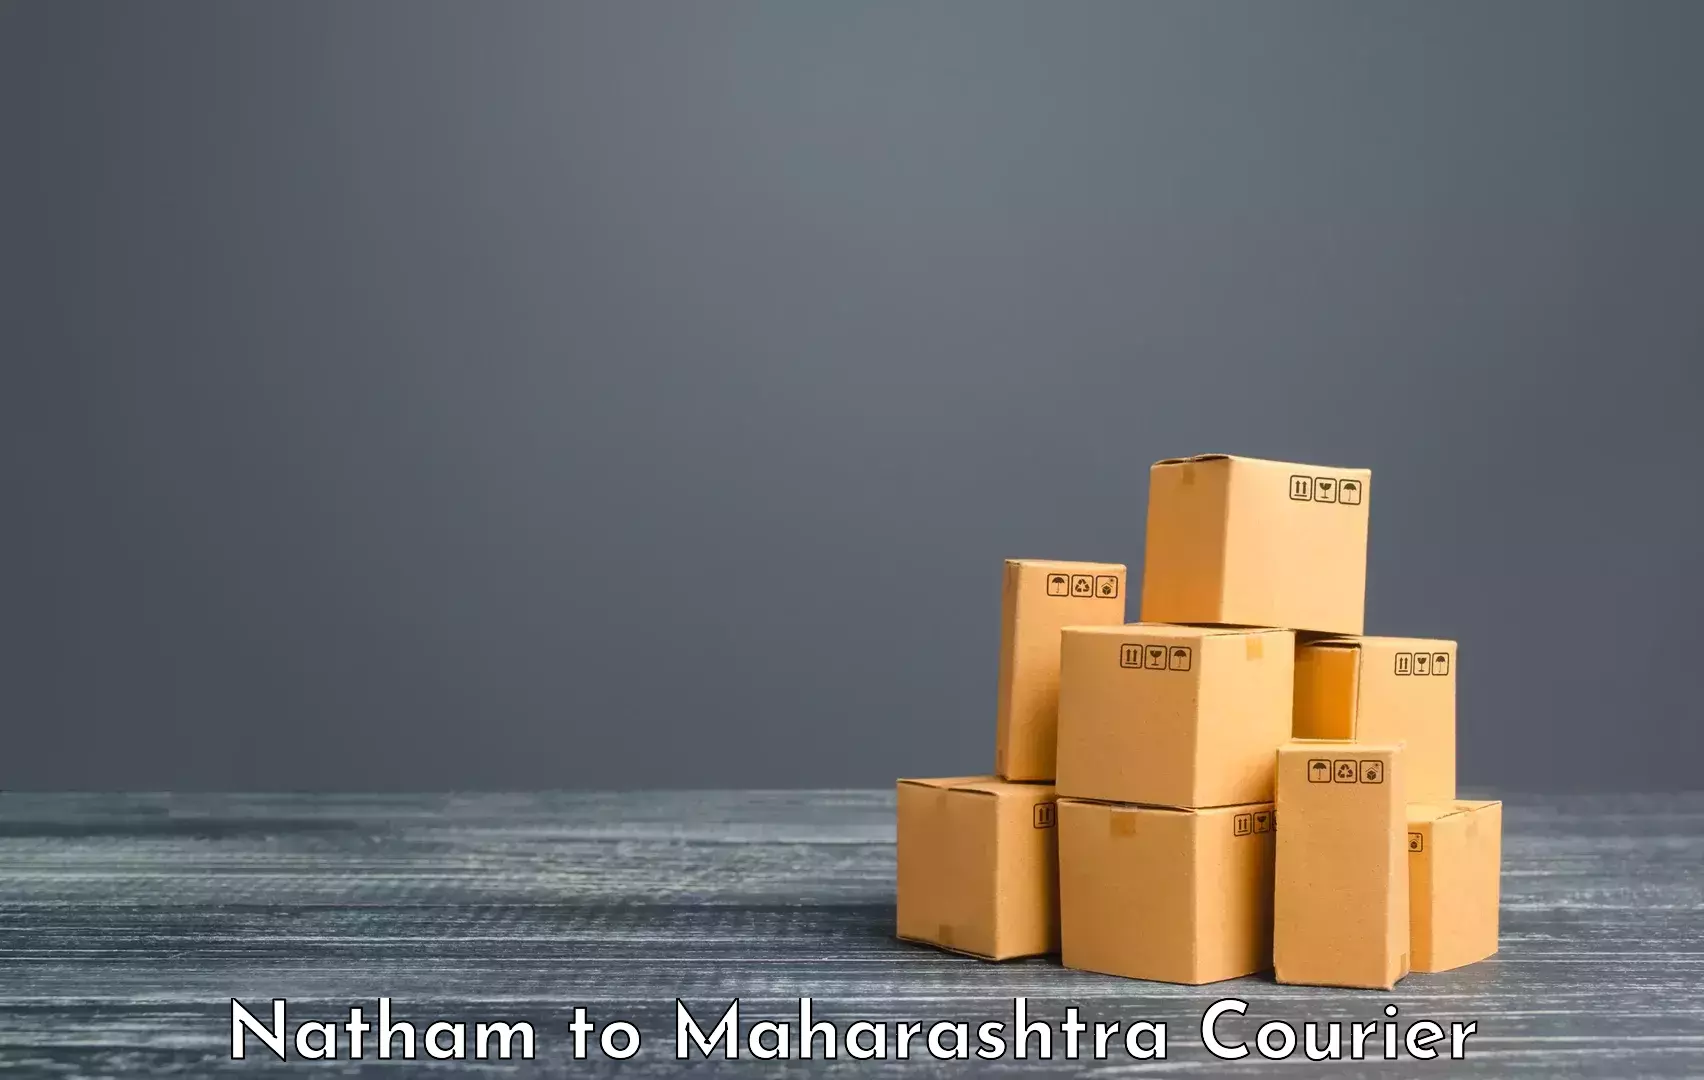 Luggage transport company Natham to Maharashtra